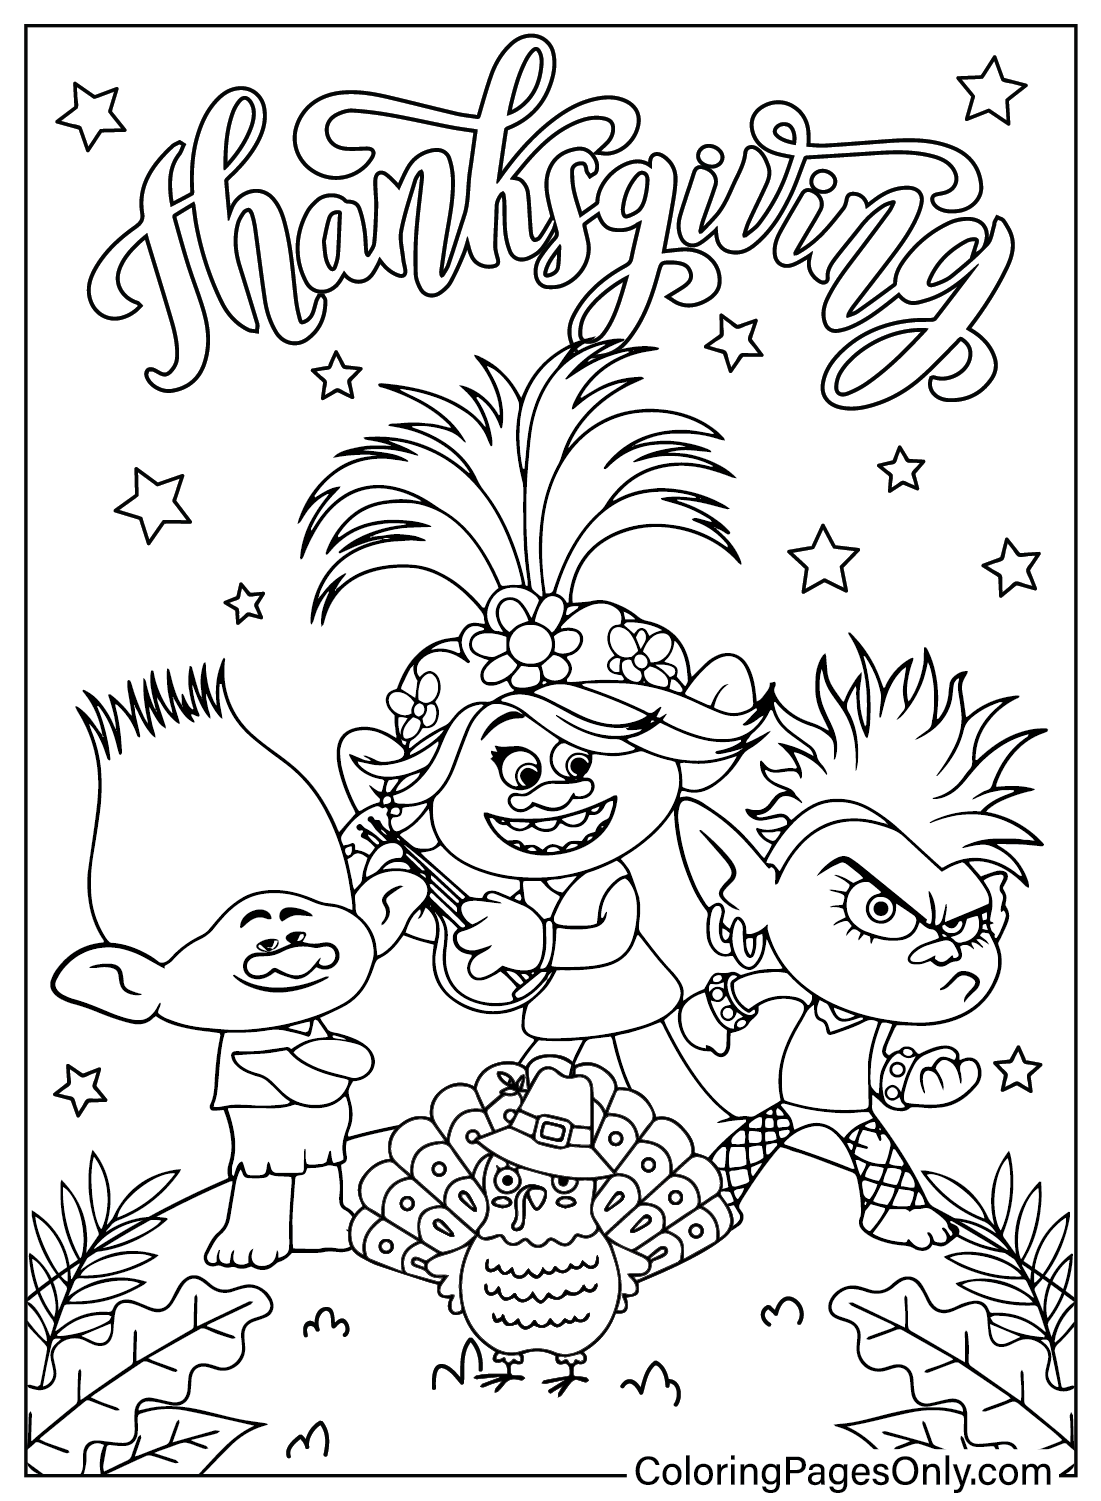 Thanksgiving Trolls kleurplaat uit Thanksgiving Cartoon